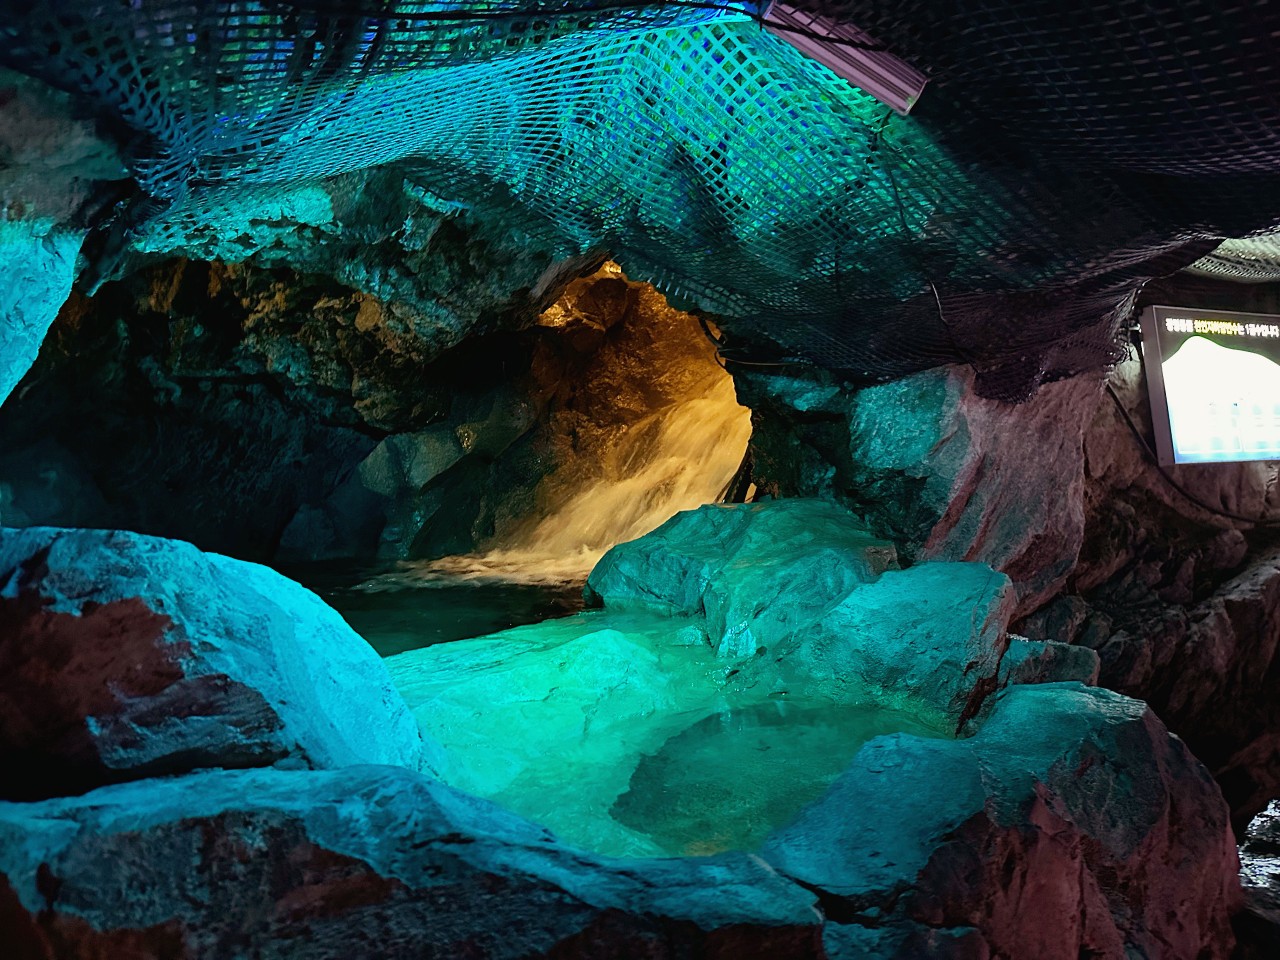 韓國首爾景點推薦 京畿道光明洞窟 一秒掉進阿凡達奇幻世界 超精彩燈光秀必看